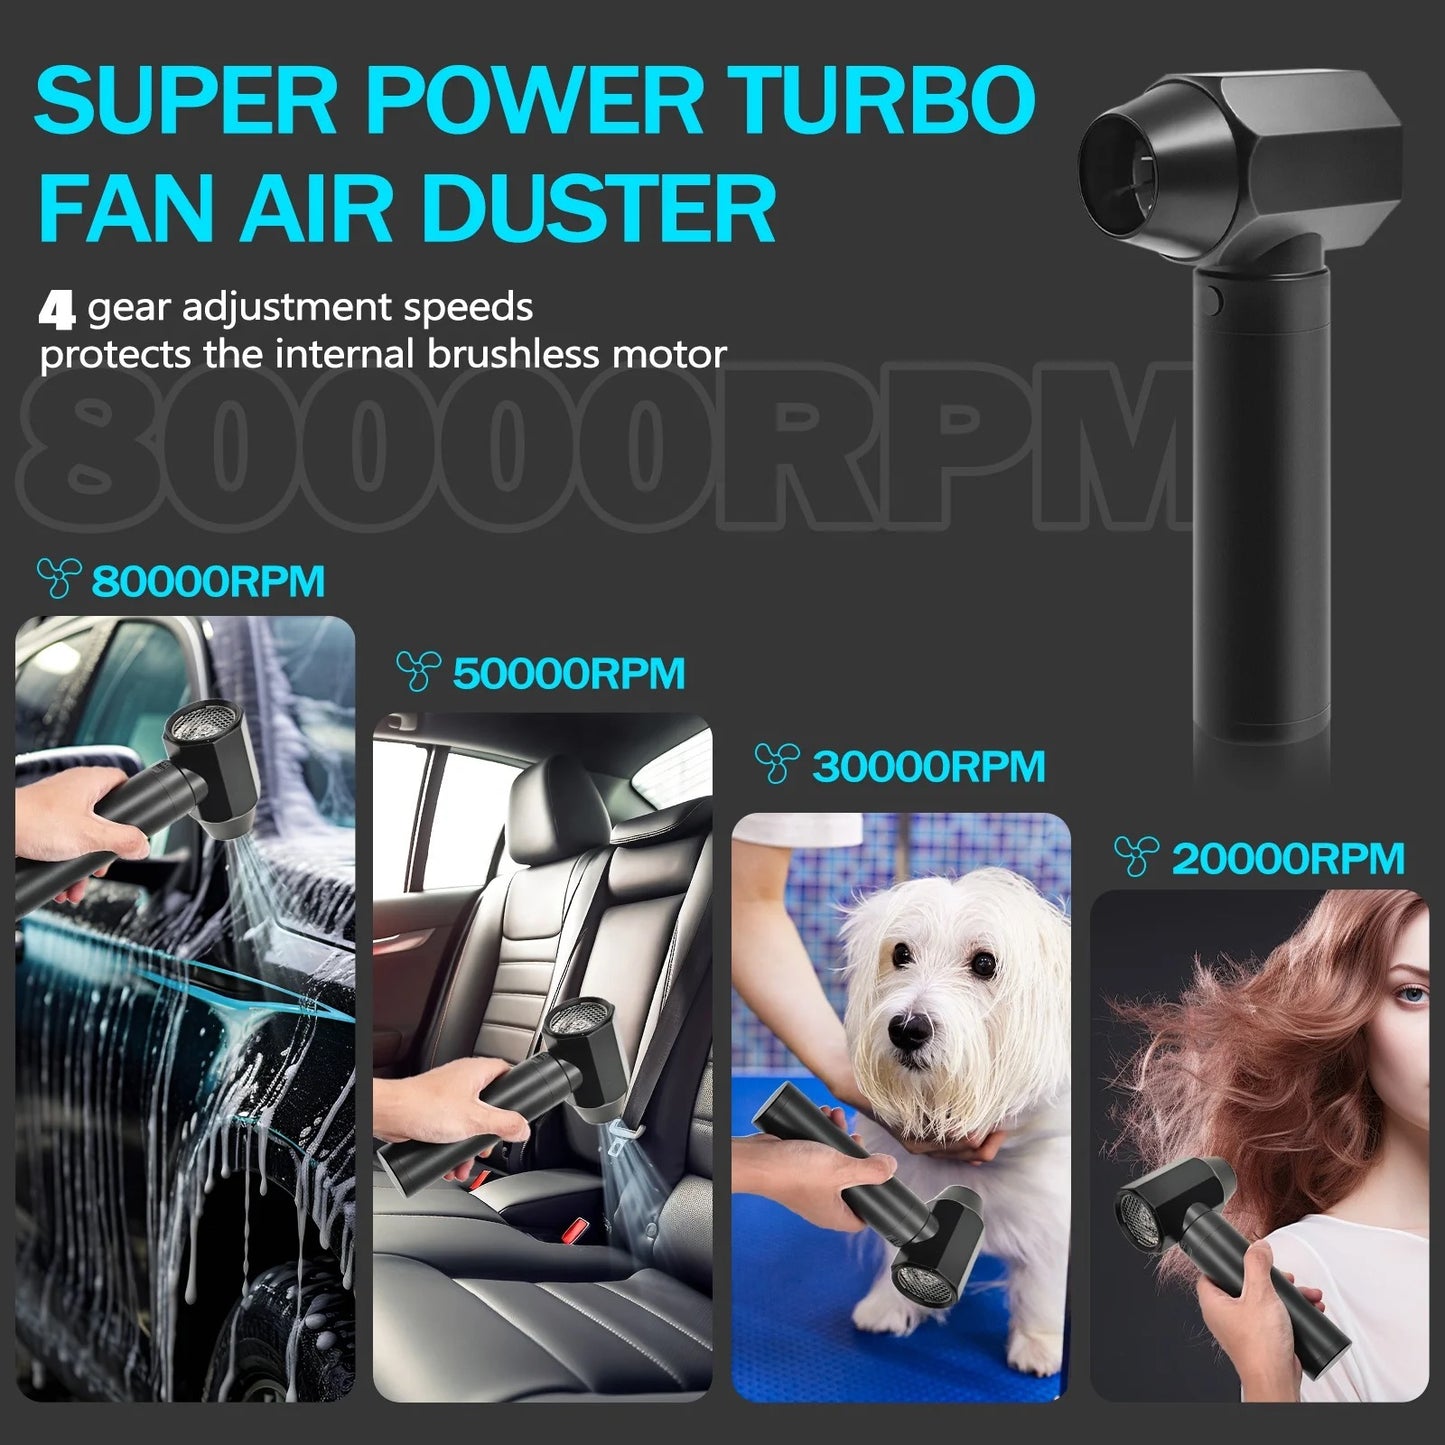 Mini jet turbo fan / air duster - مروحة جت تيربو